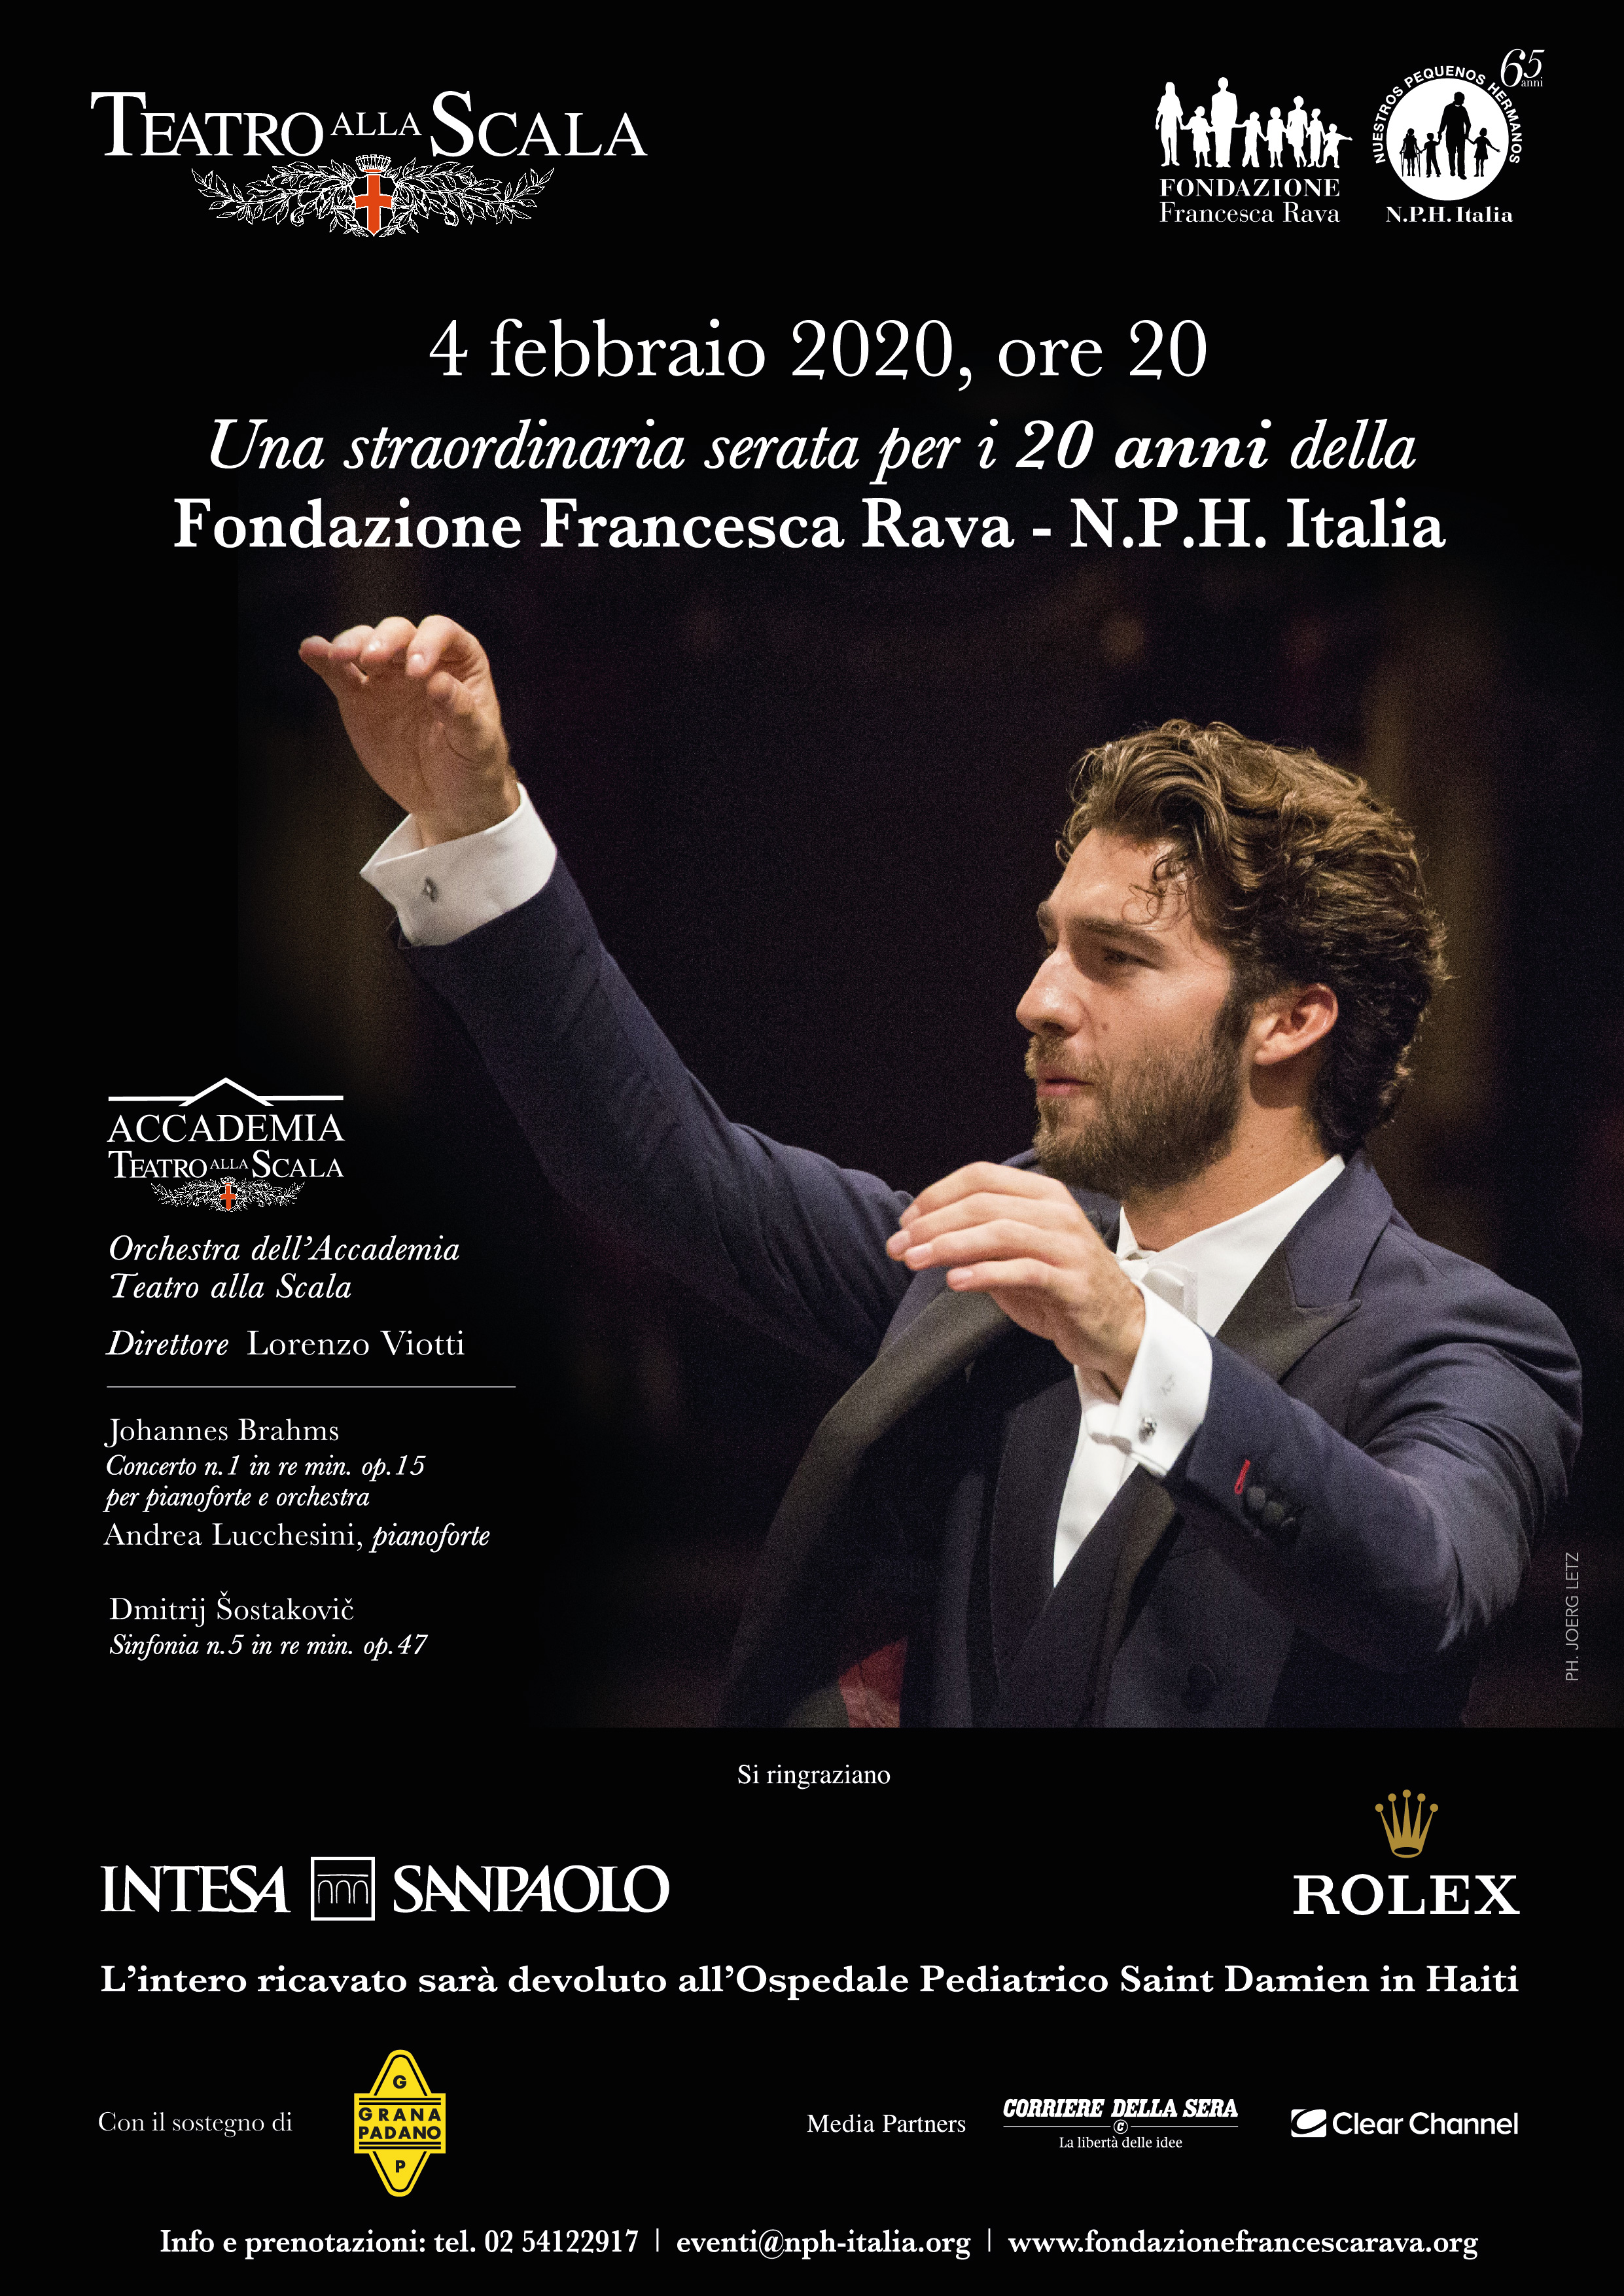 4 febbraio, Concerto dell'Orchestra dell'Accademia del Teatro alla Scala per i 20 anni della Fondazione Francesca Rava